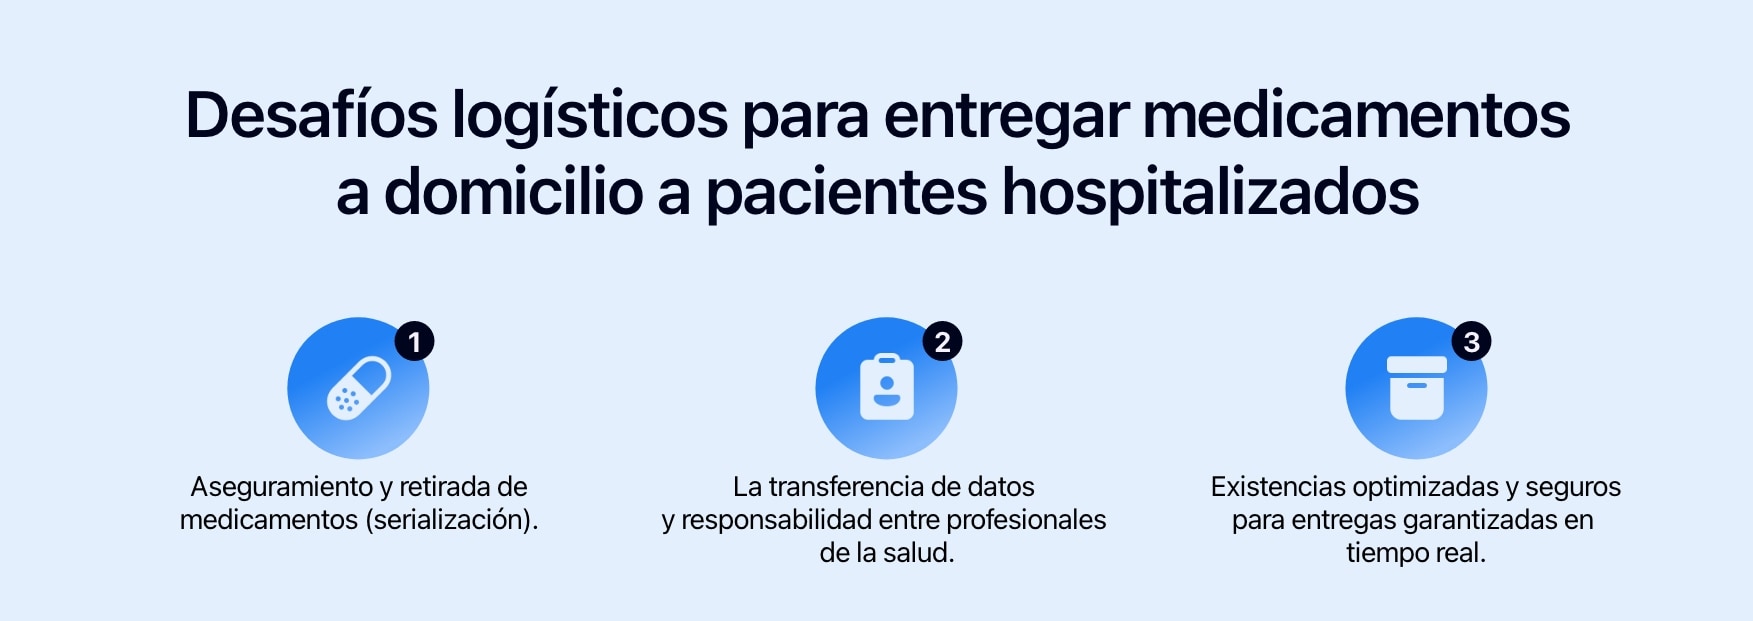 Diagrama que muestra los 3 retos logísticos para entregar medicamentos a los pacientes hospitalizados a sus domicilios.